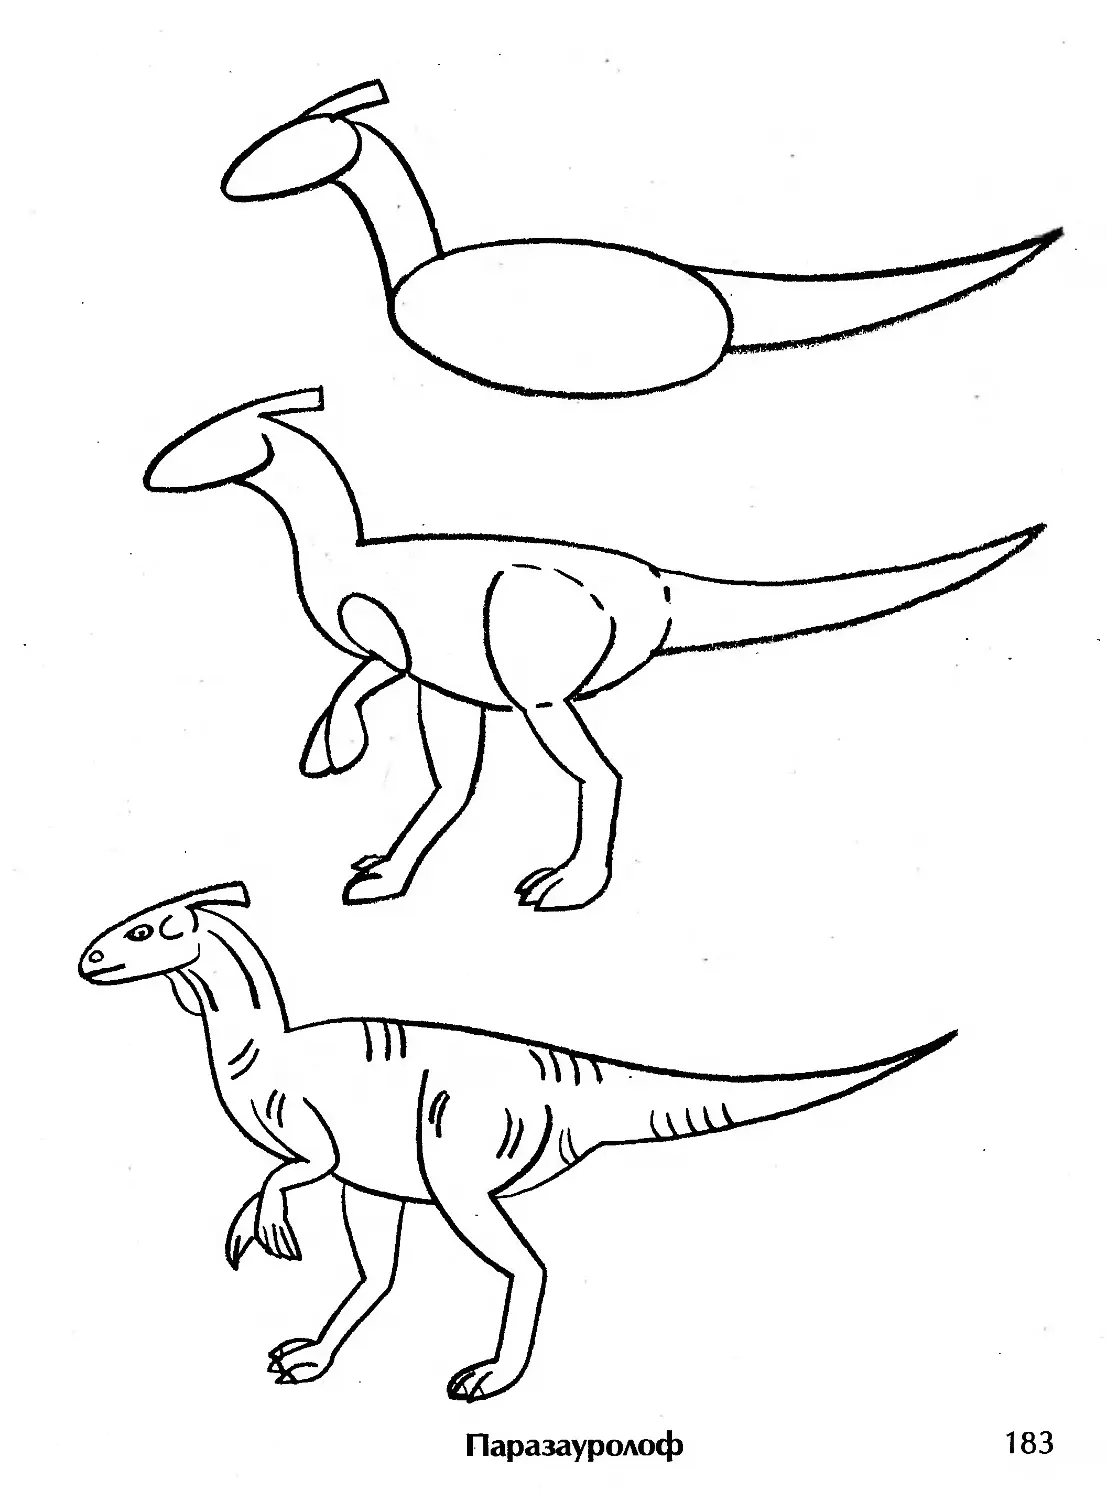 Обучалка по рисованию динозавров